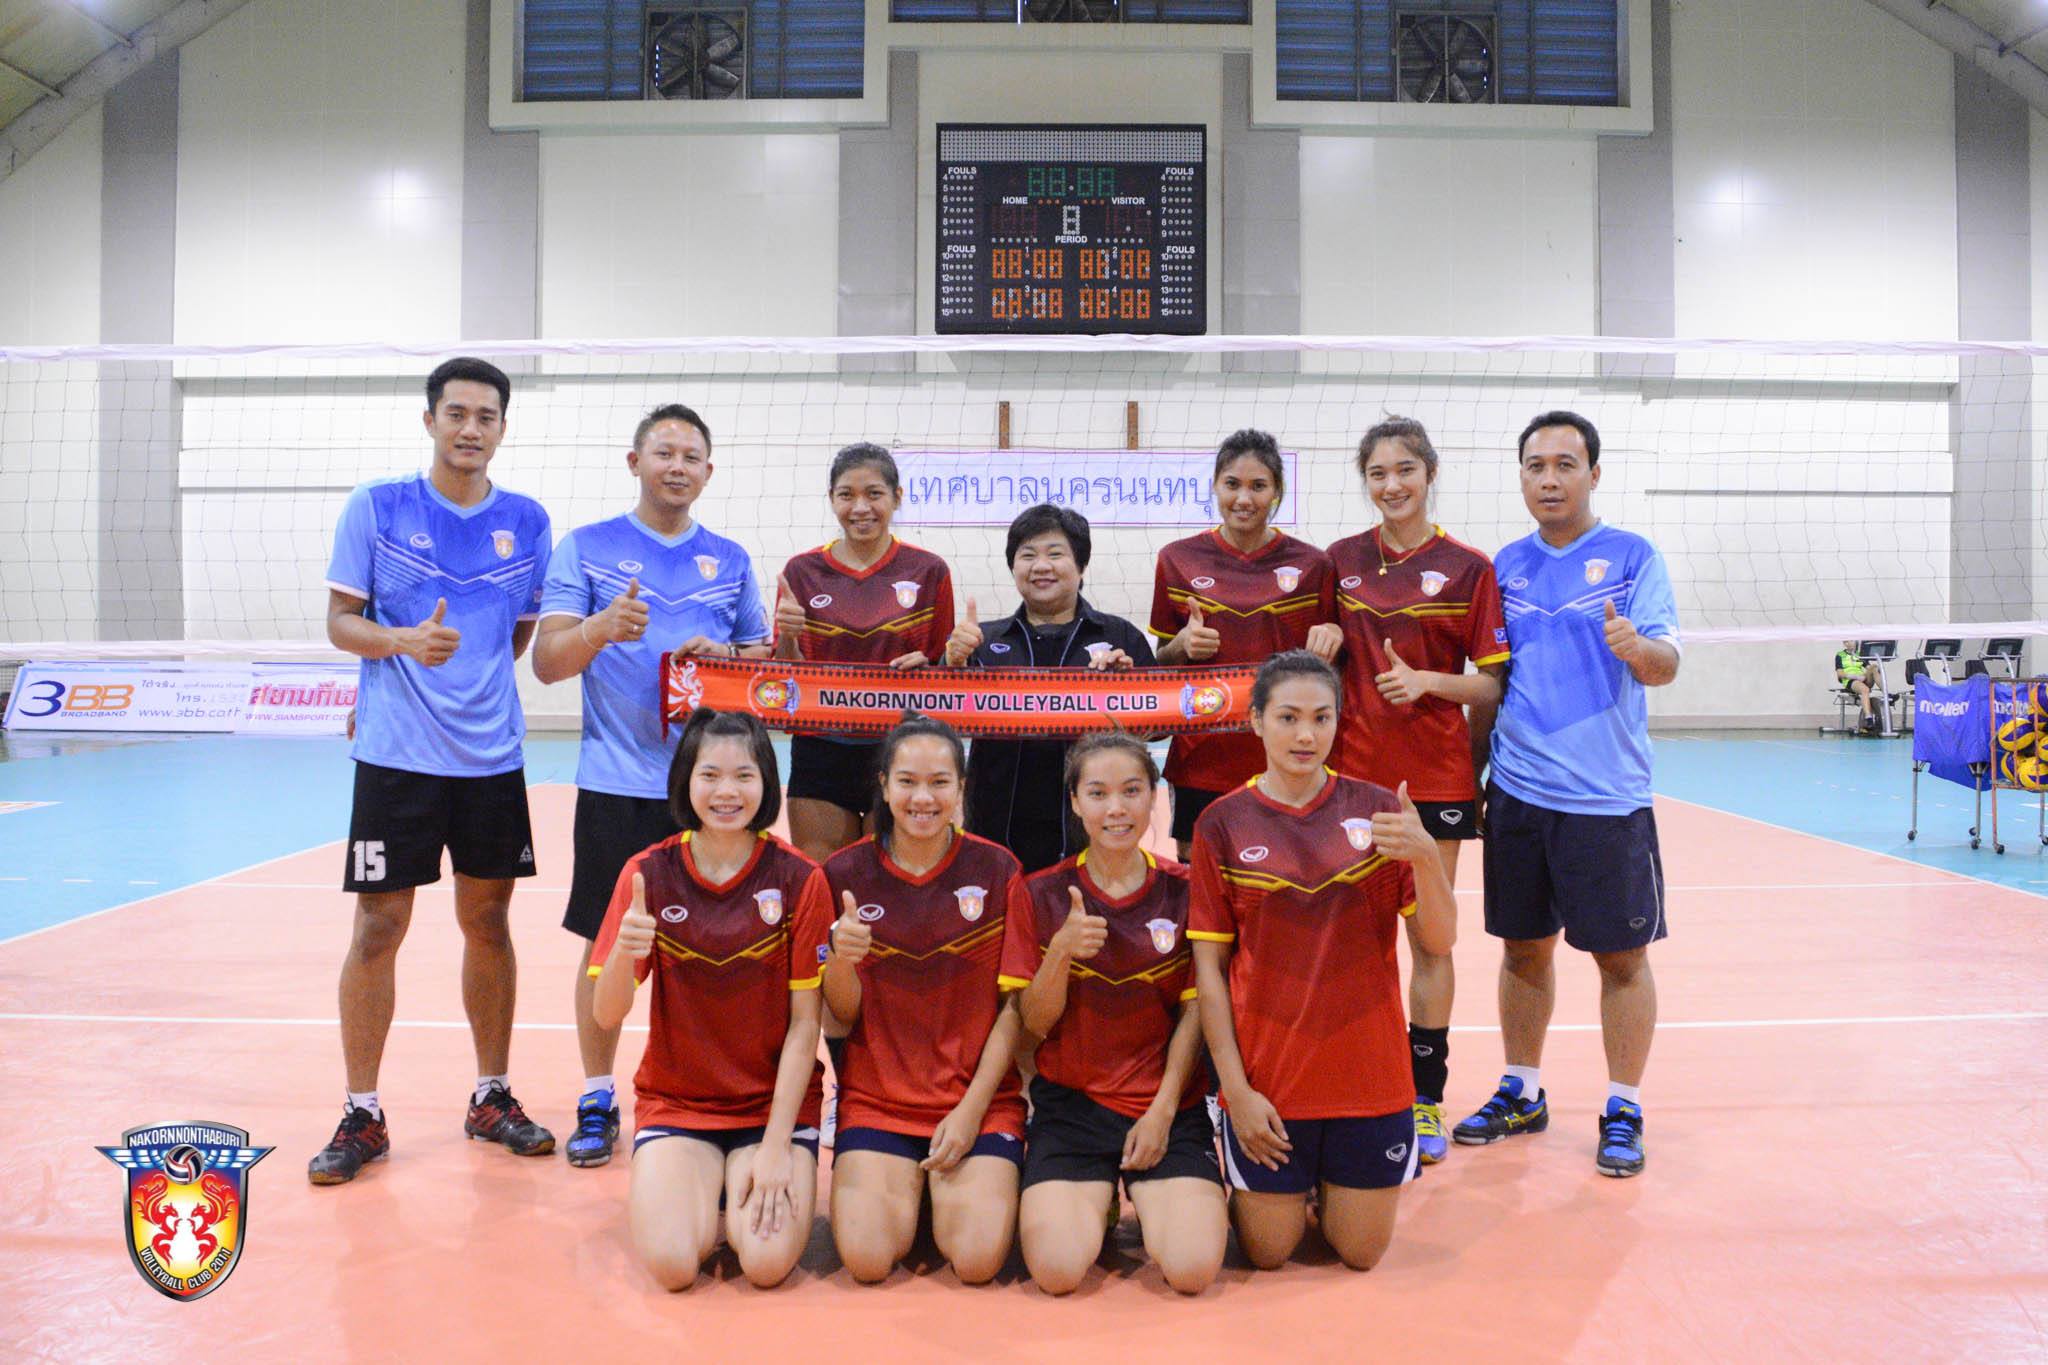 alyssa valdez - nakornnont volleyball team thailand